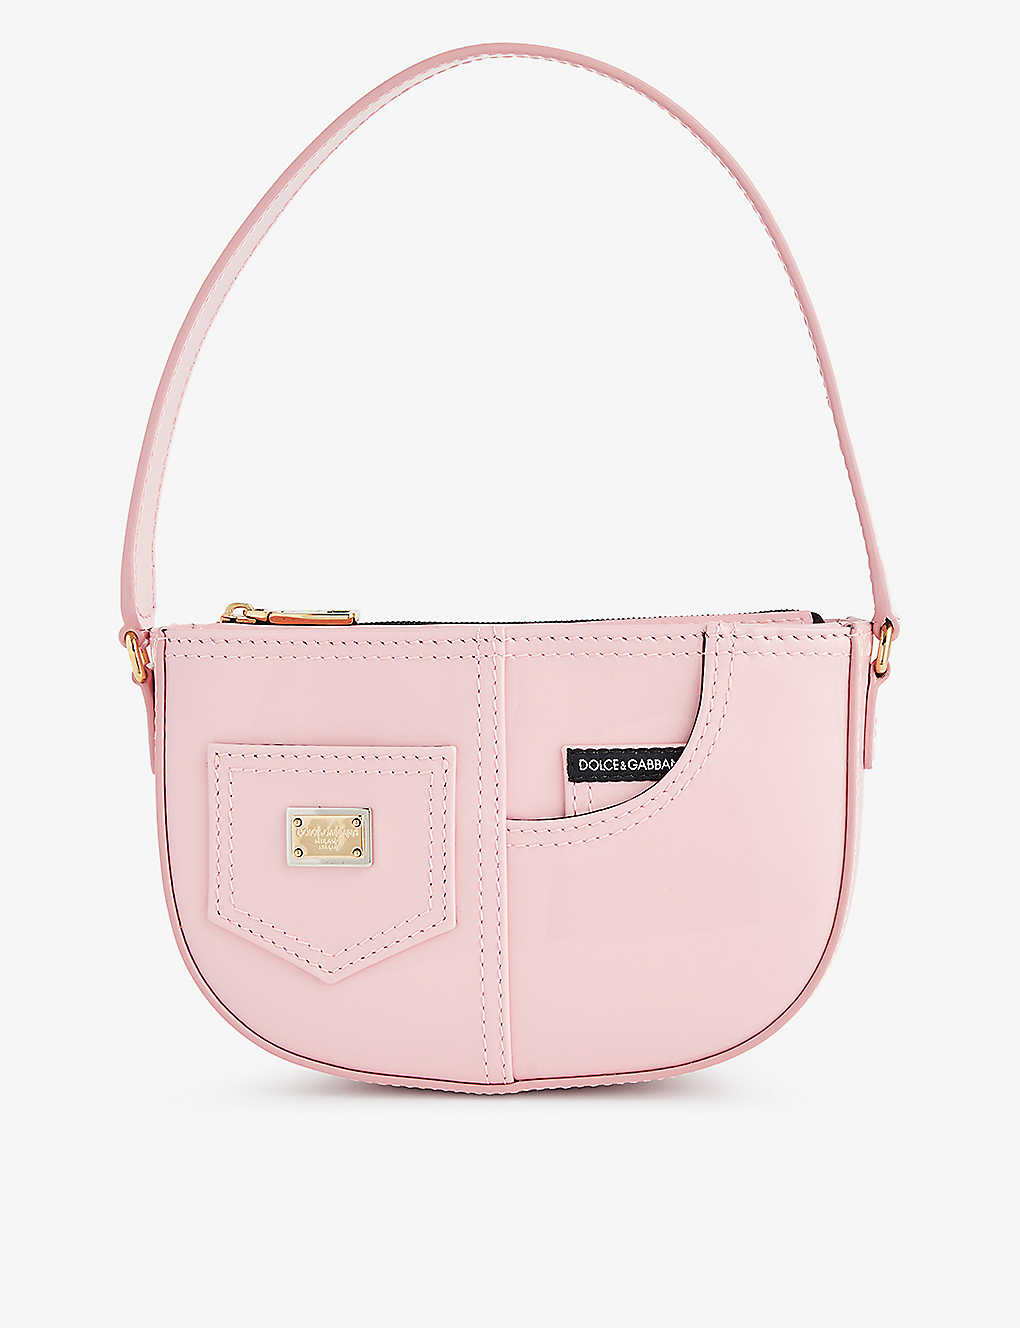 Dolce & Gabbana Kids' Branded Leather Shoulder Bag In Pink 1